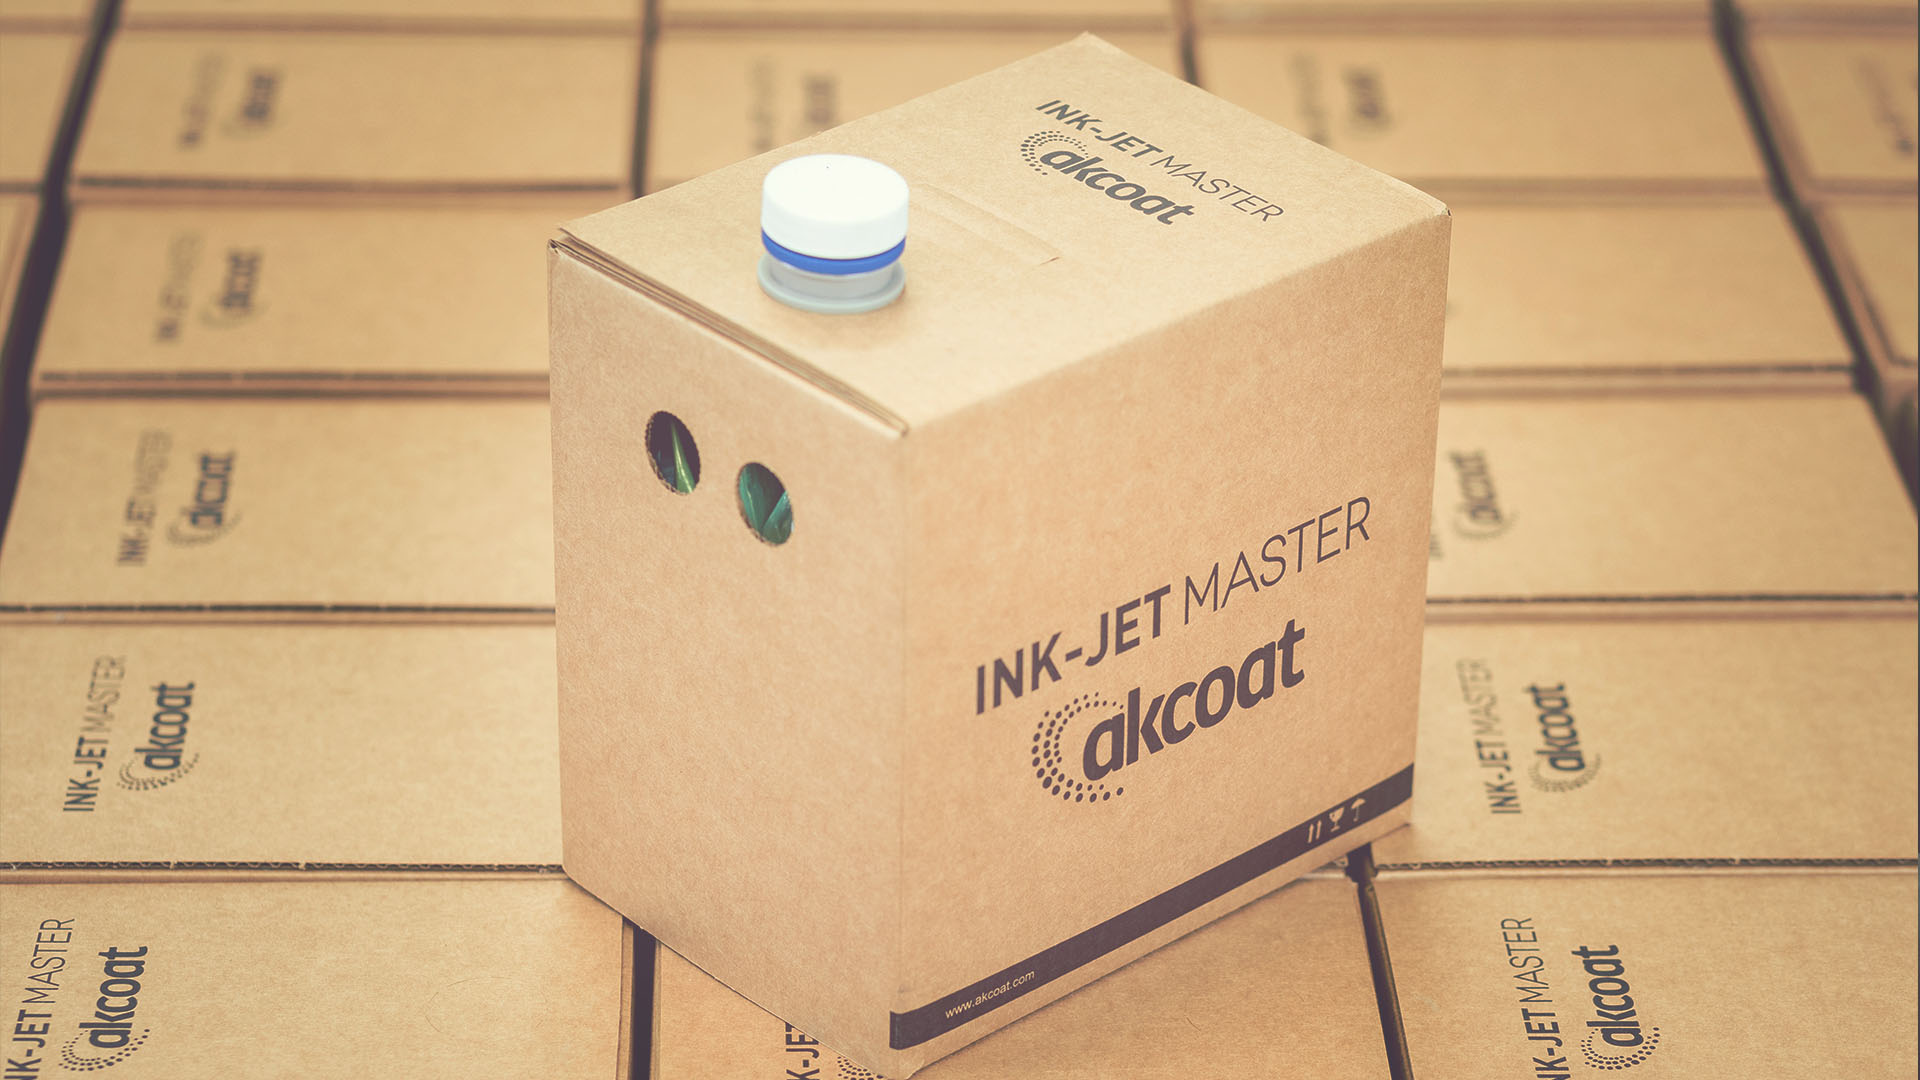 Hinojosa desarrolla un packaging sostenible para la empresa de tintas cerámicas Akcoat